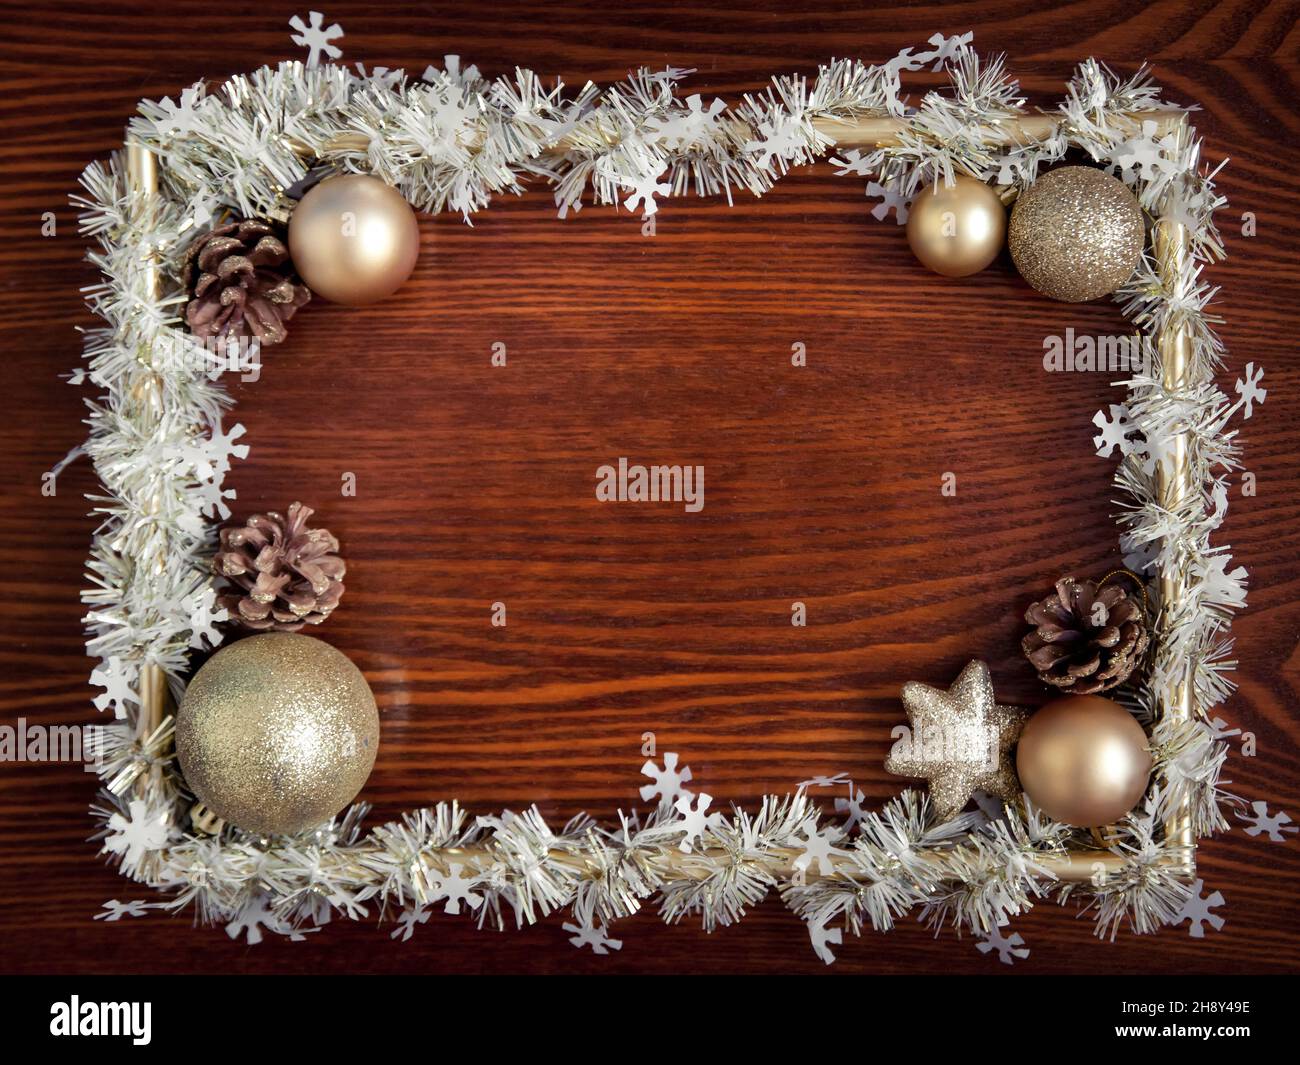 Fotorahmen, goldene Dekorationen auf einem hölzernen Hintergrund. Weihnachten, Winter, Neujahr Konzept. Flach liegend, Draufsicht, Kopierbereich. Weihnachtliche Begrenzung von Kugeln Stockfoto